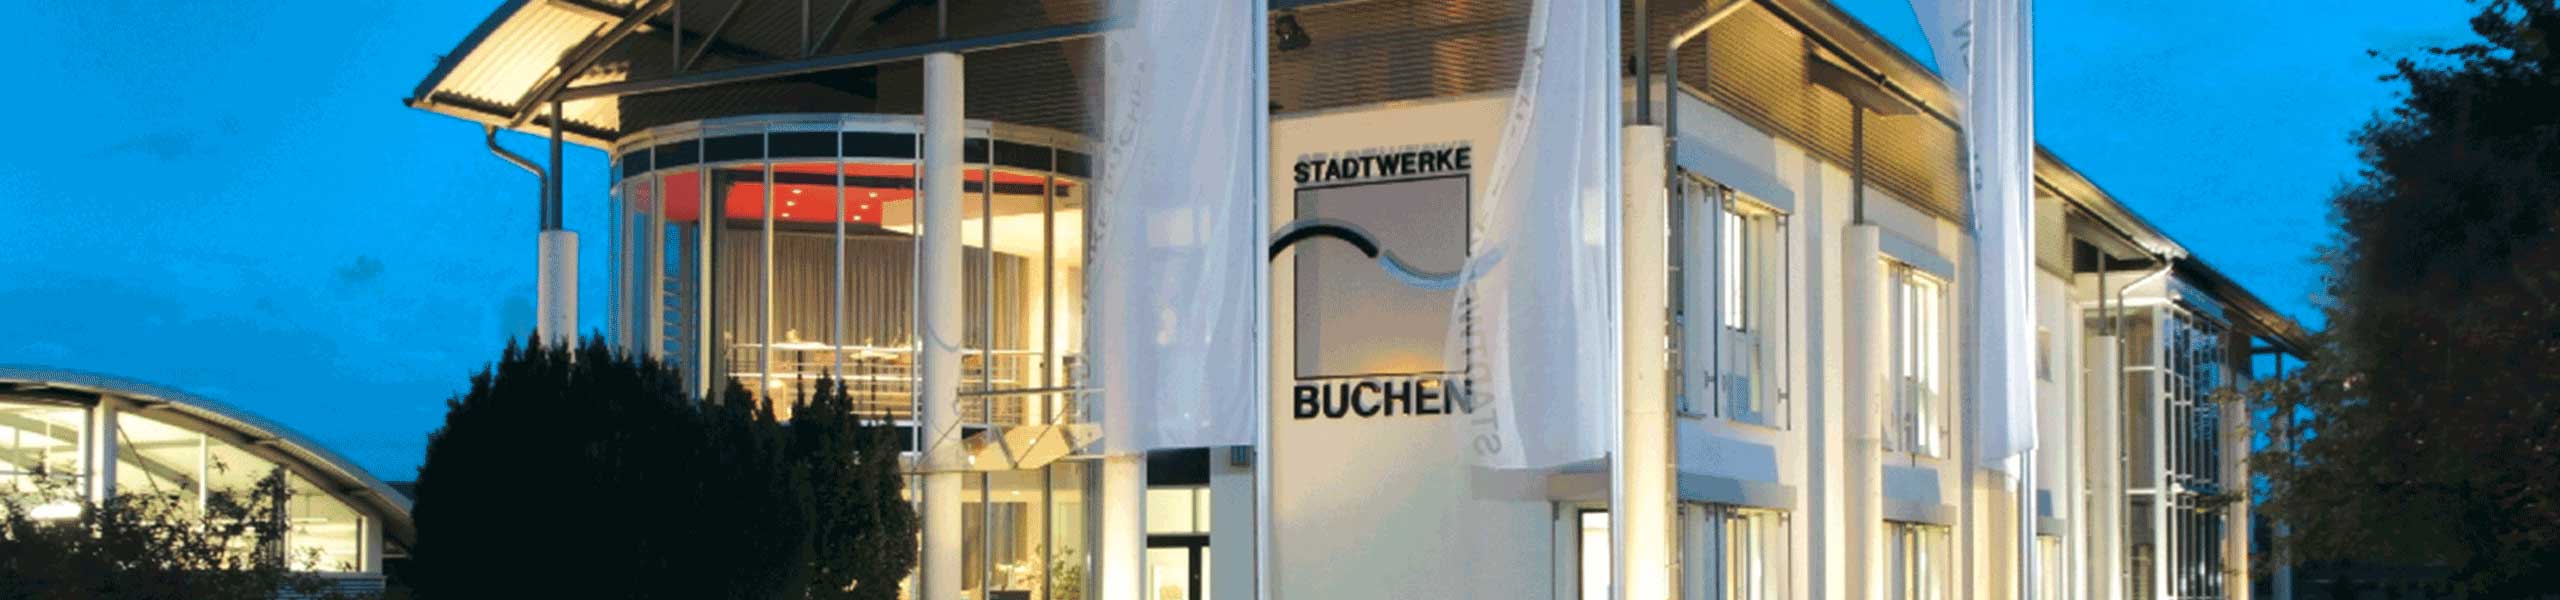 Stadtwerke Buchen GmbH & Co KG - Ihr Versorger vor Ort - Grundlage